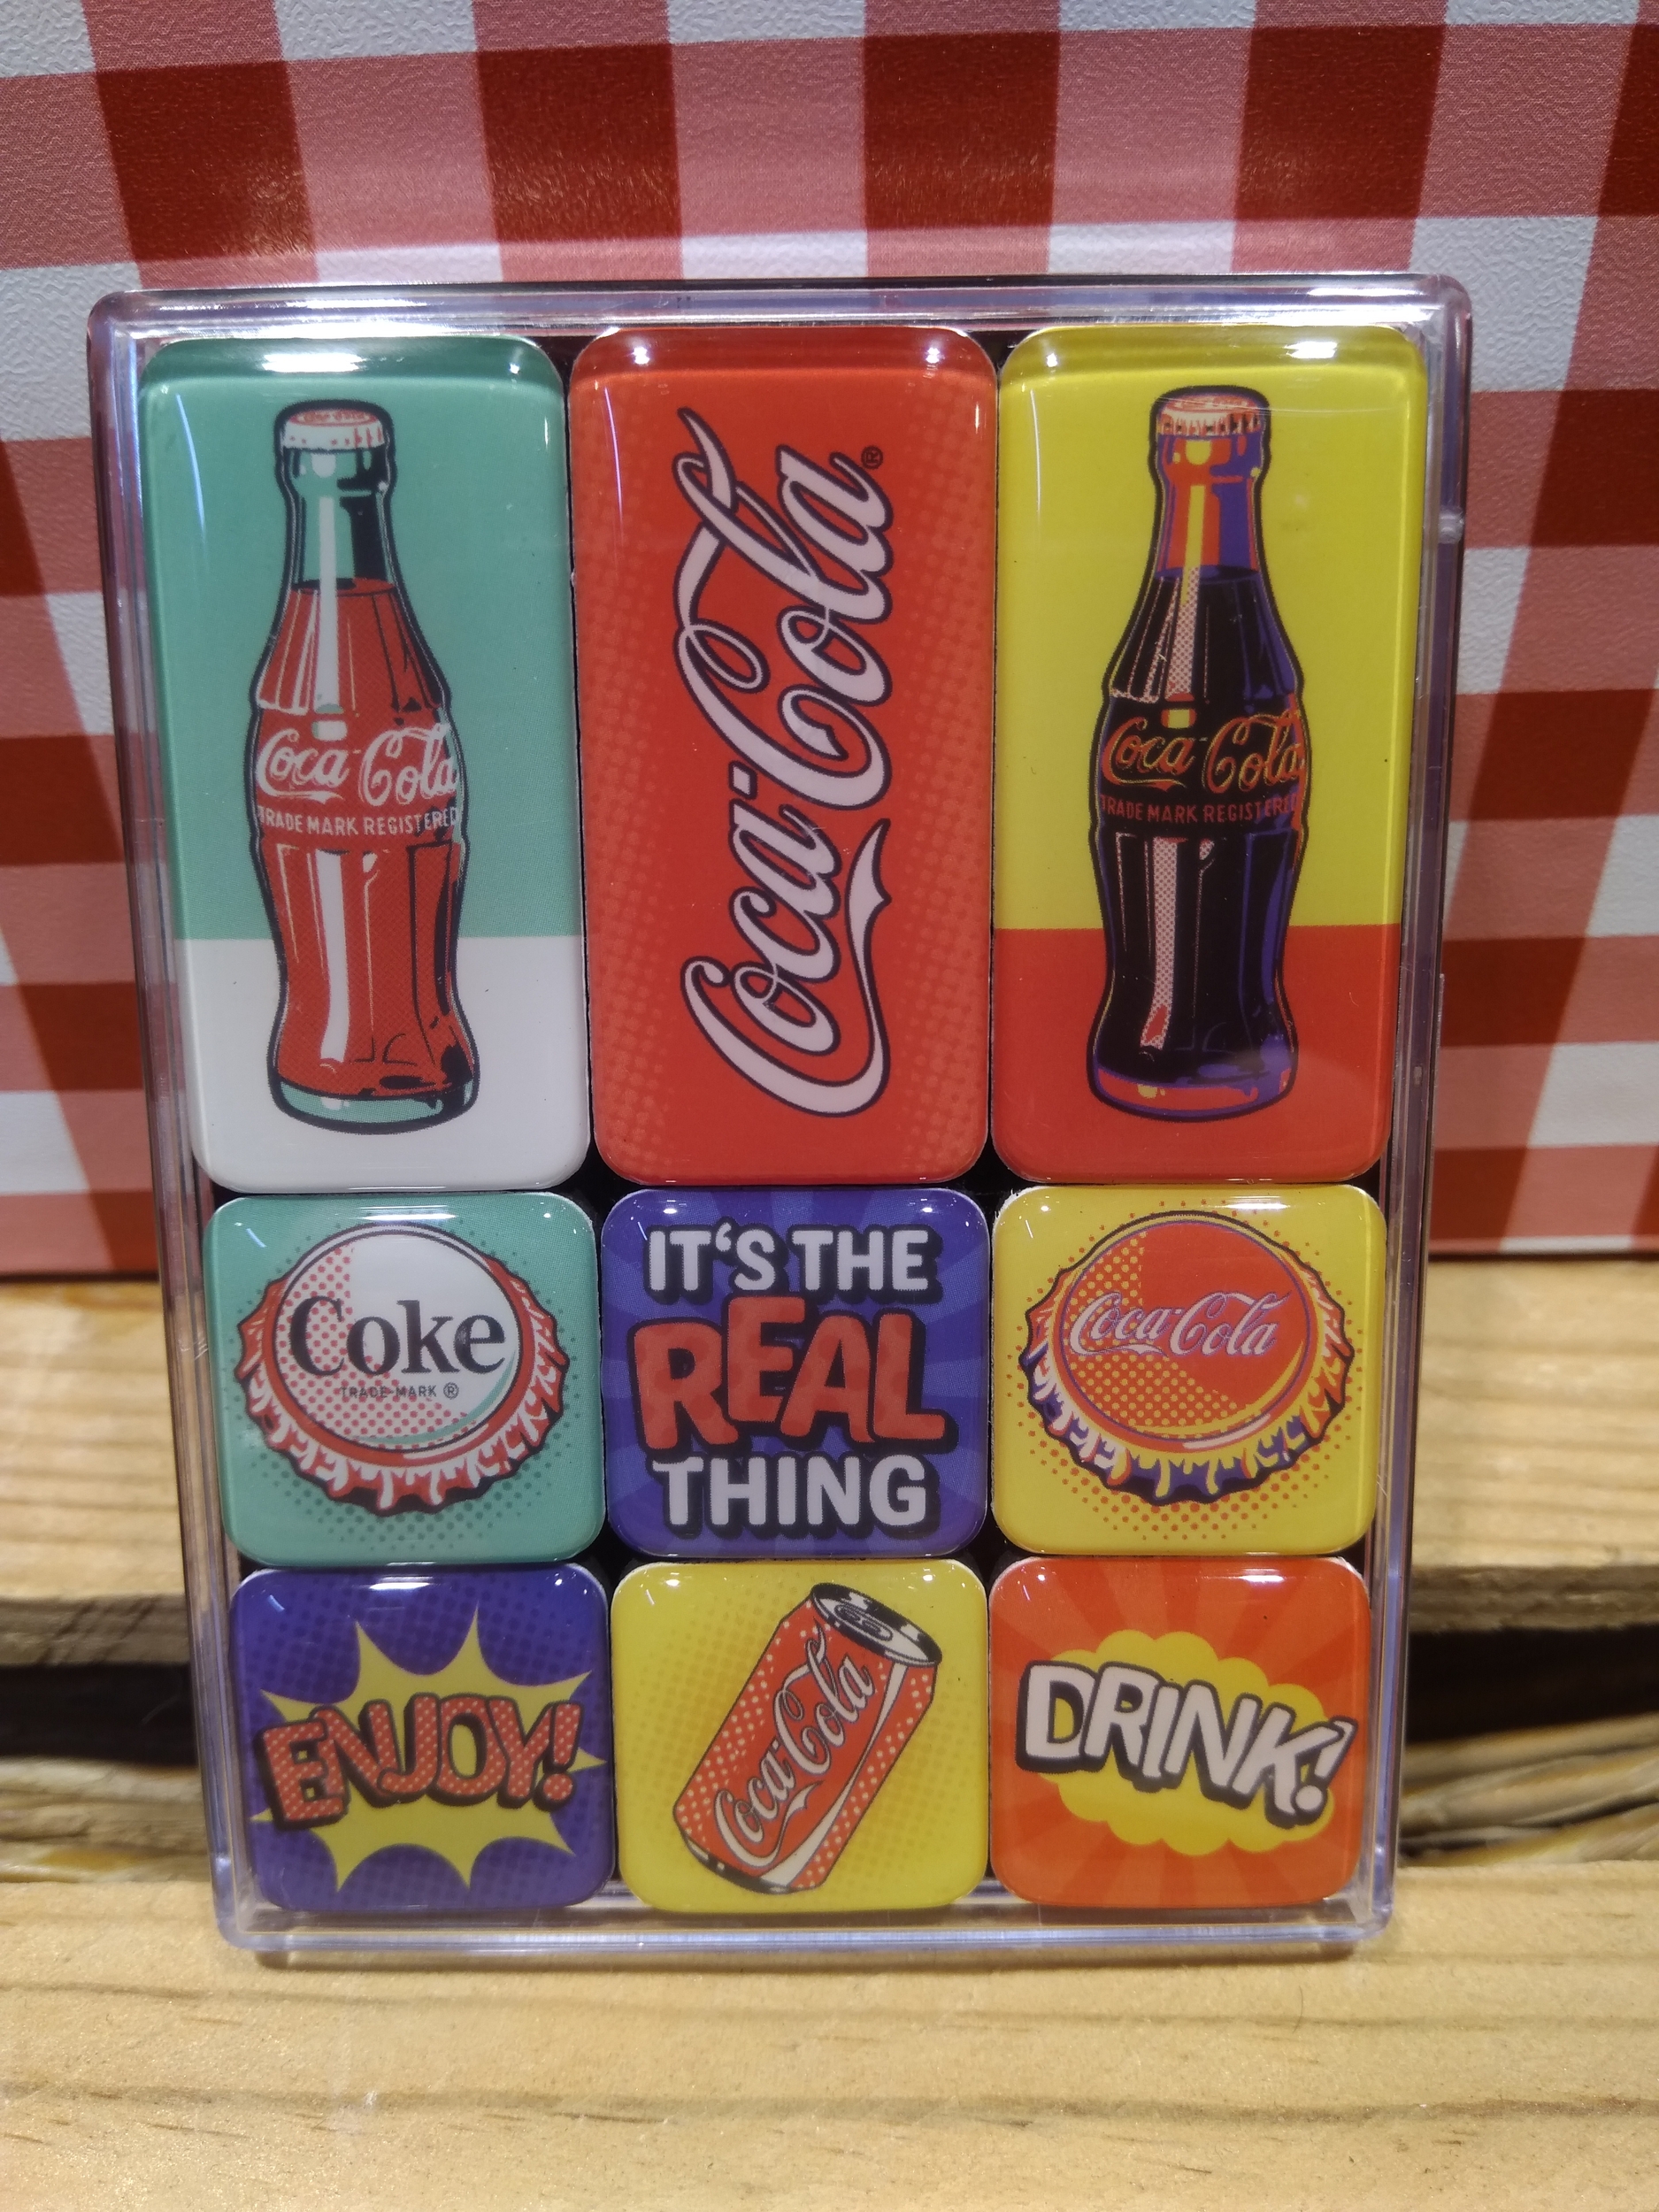 Lot de 9 magnets Coca-cola rétro - Idées cadeau/Les magnets